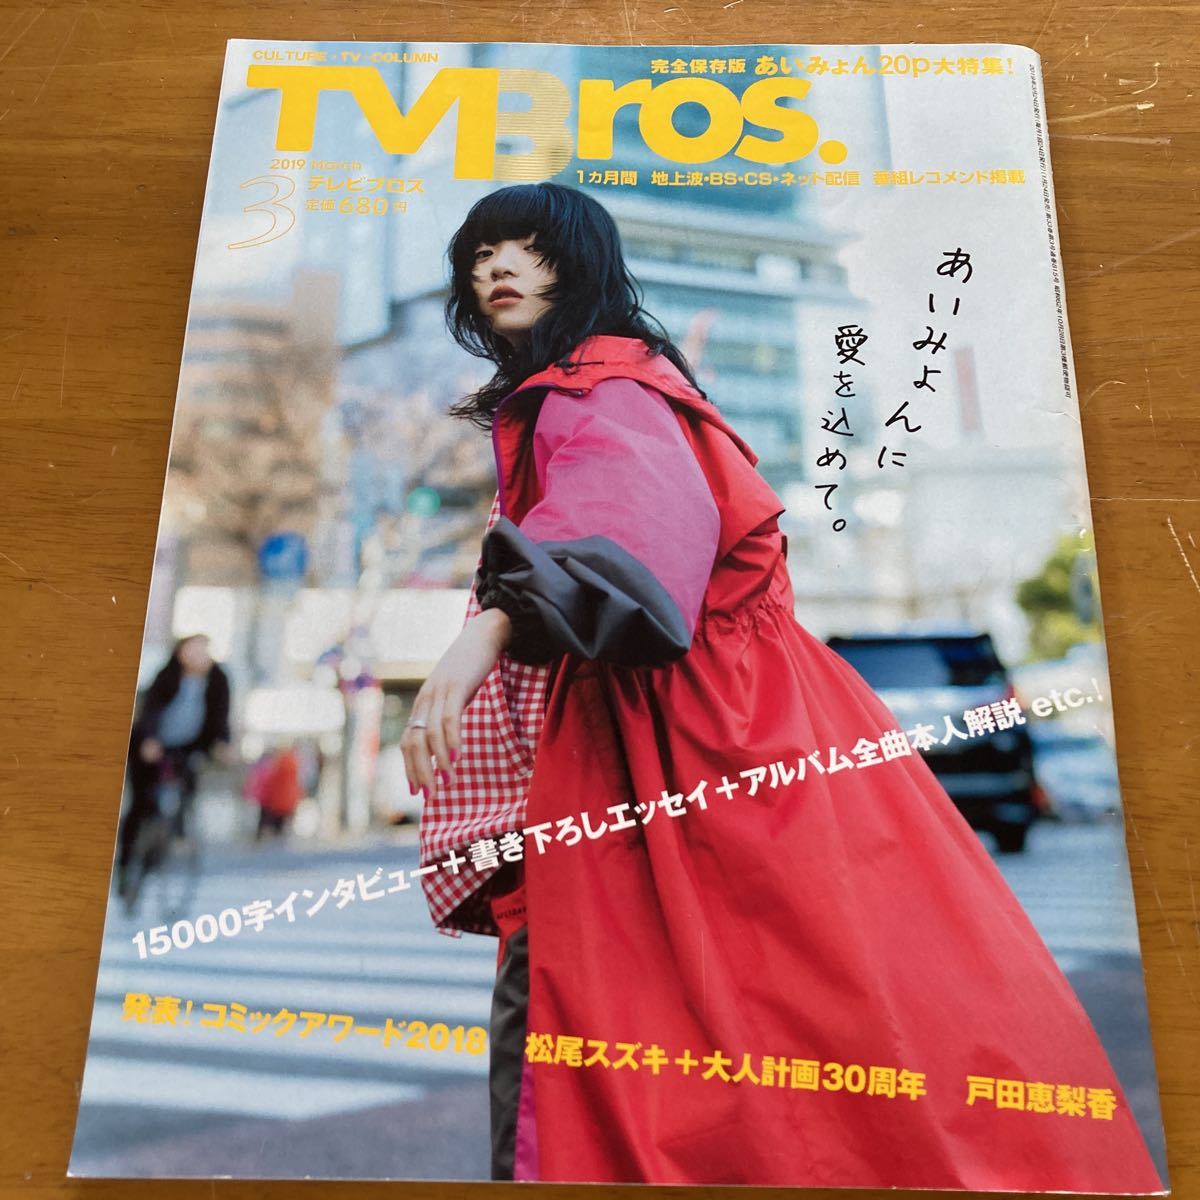  телевизор Bros 2019 год 3 месяц номер ..... Toda . груша . Matsuo Suzuki 